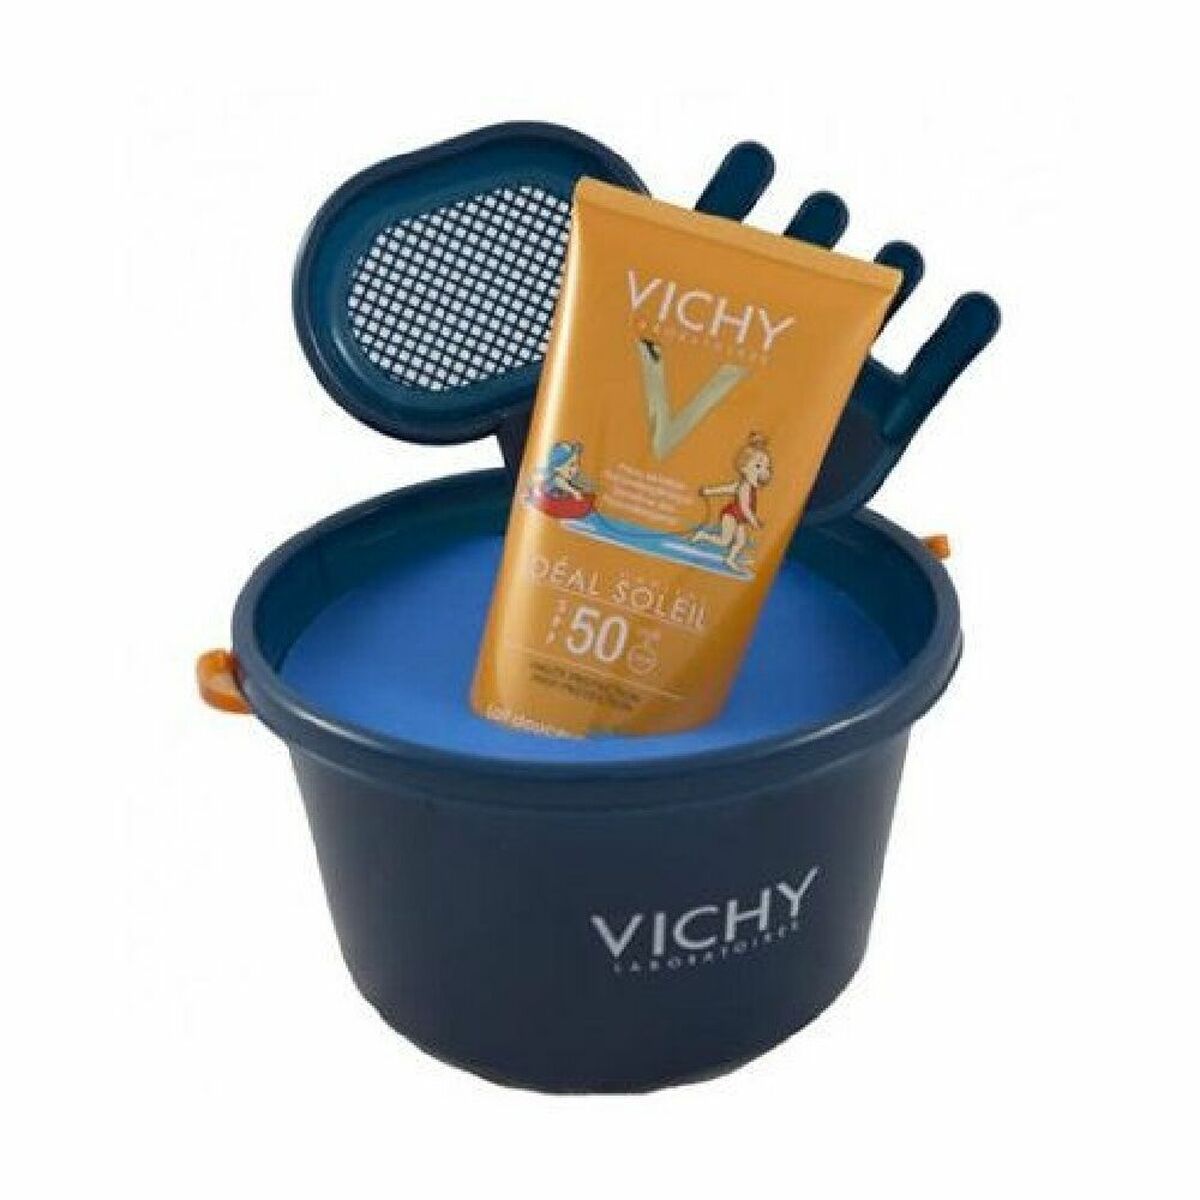 Set de Protecție Solară Vichy Ideal Soleil Spf 50 Pentru băieți (2 pcs)